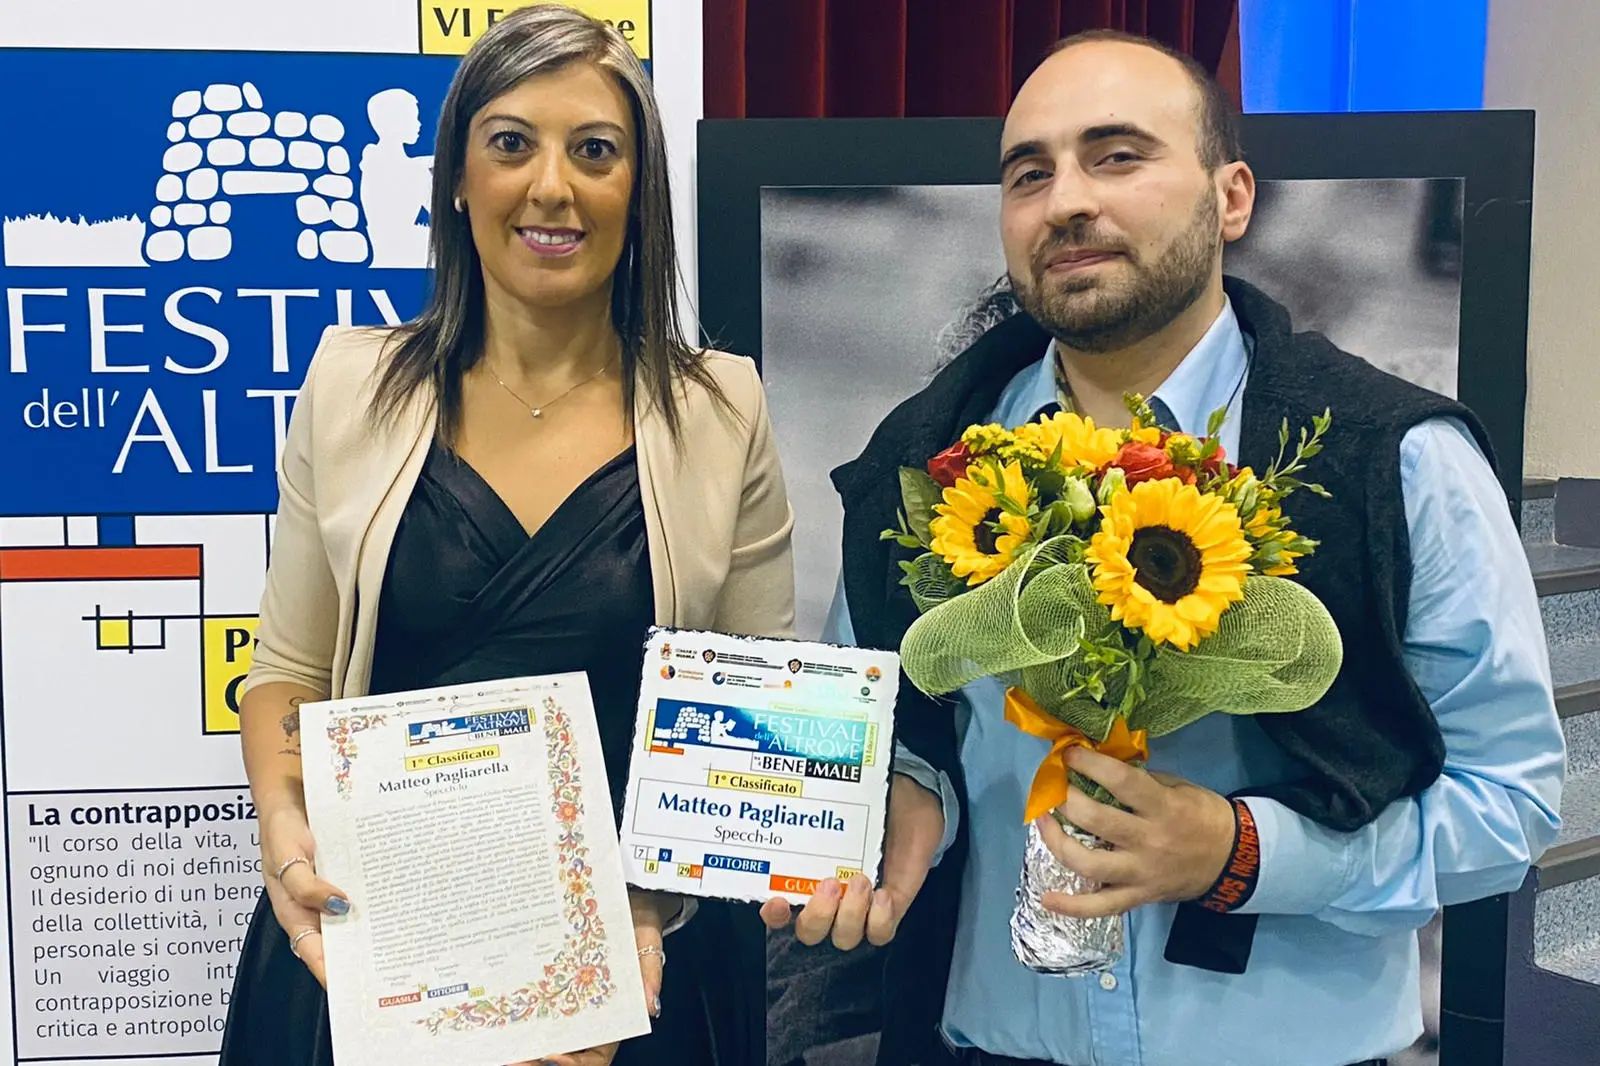 La sindaca Paola Casula premia il vincitore Matteo Pagliarella (foto Simone Spada)